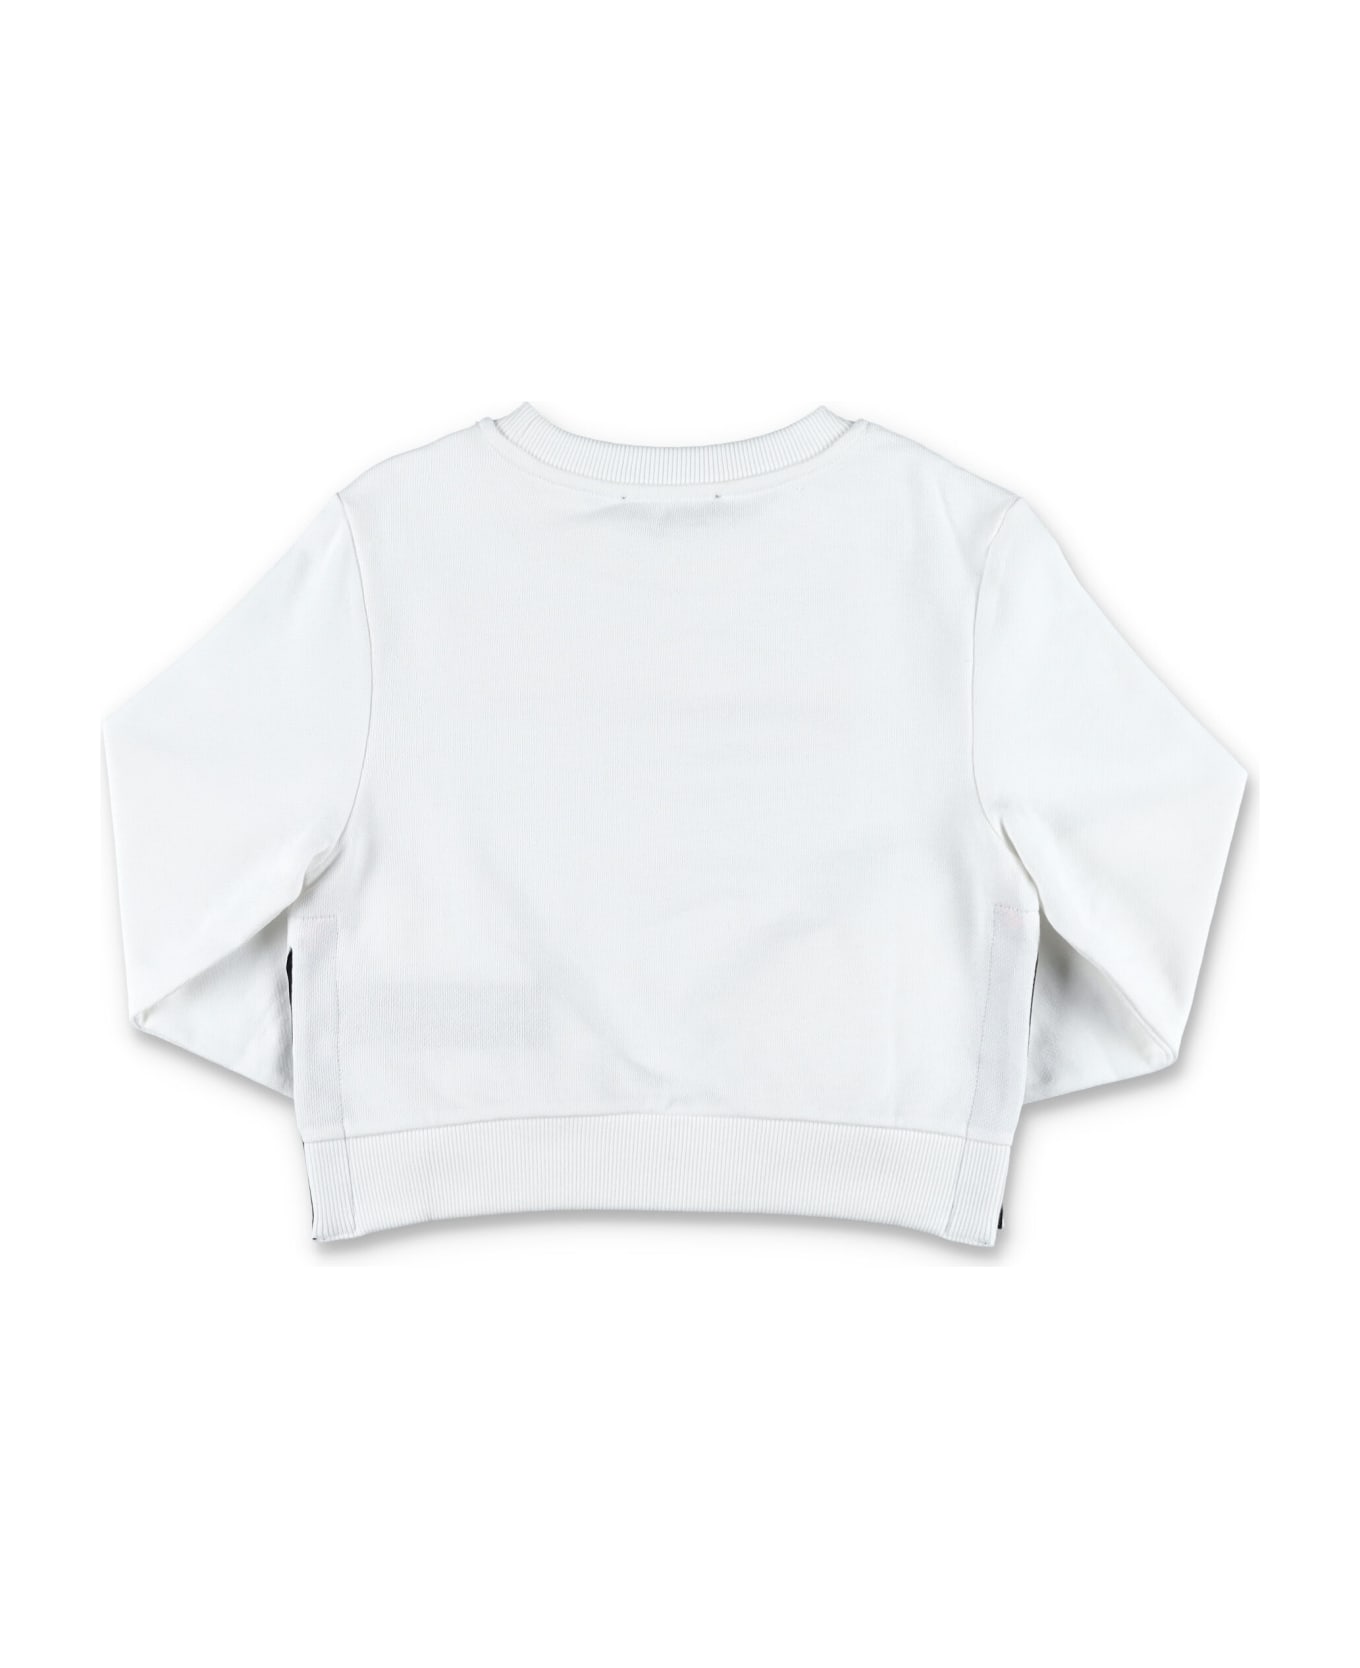 Balmain Paris Two-tone Sweatshirt - WHITE/FUCHSIA ニットウェア＆スウェットシャツ